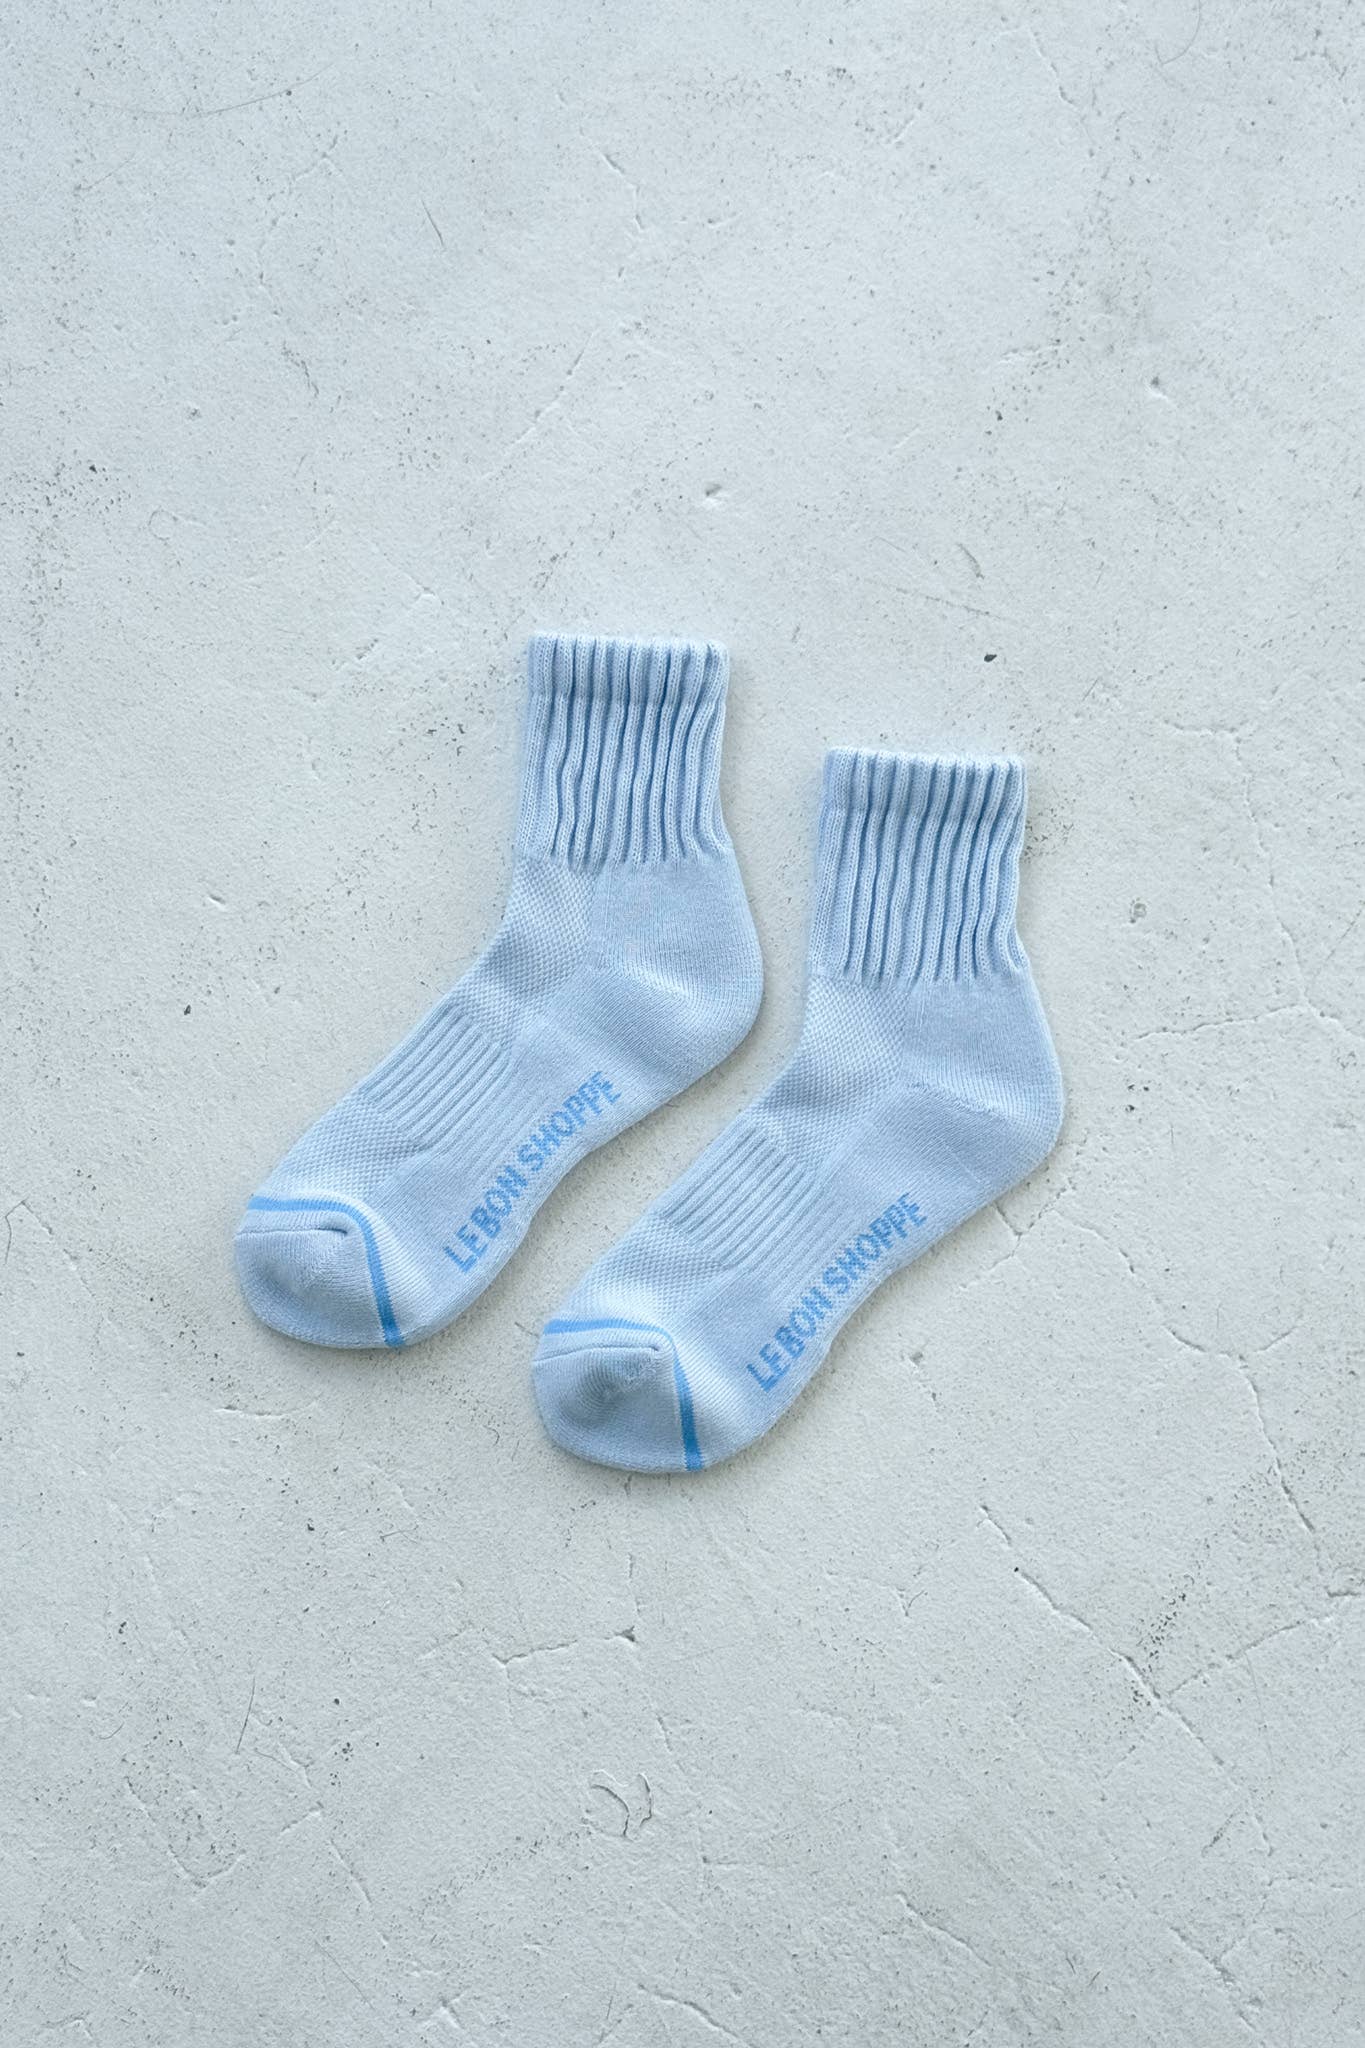 Le Bon Shoppe Swing Socks - OS